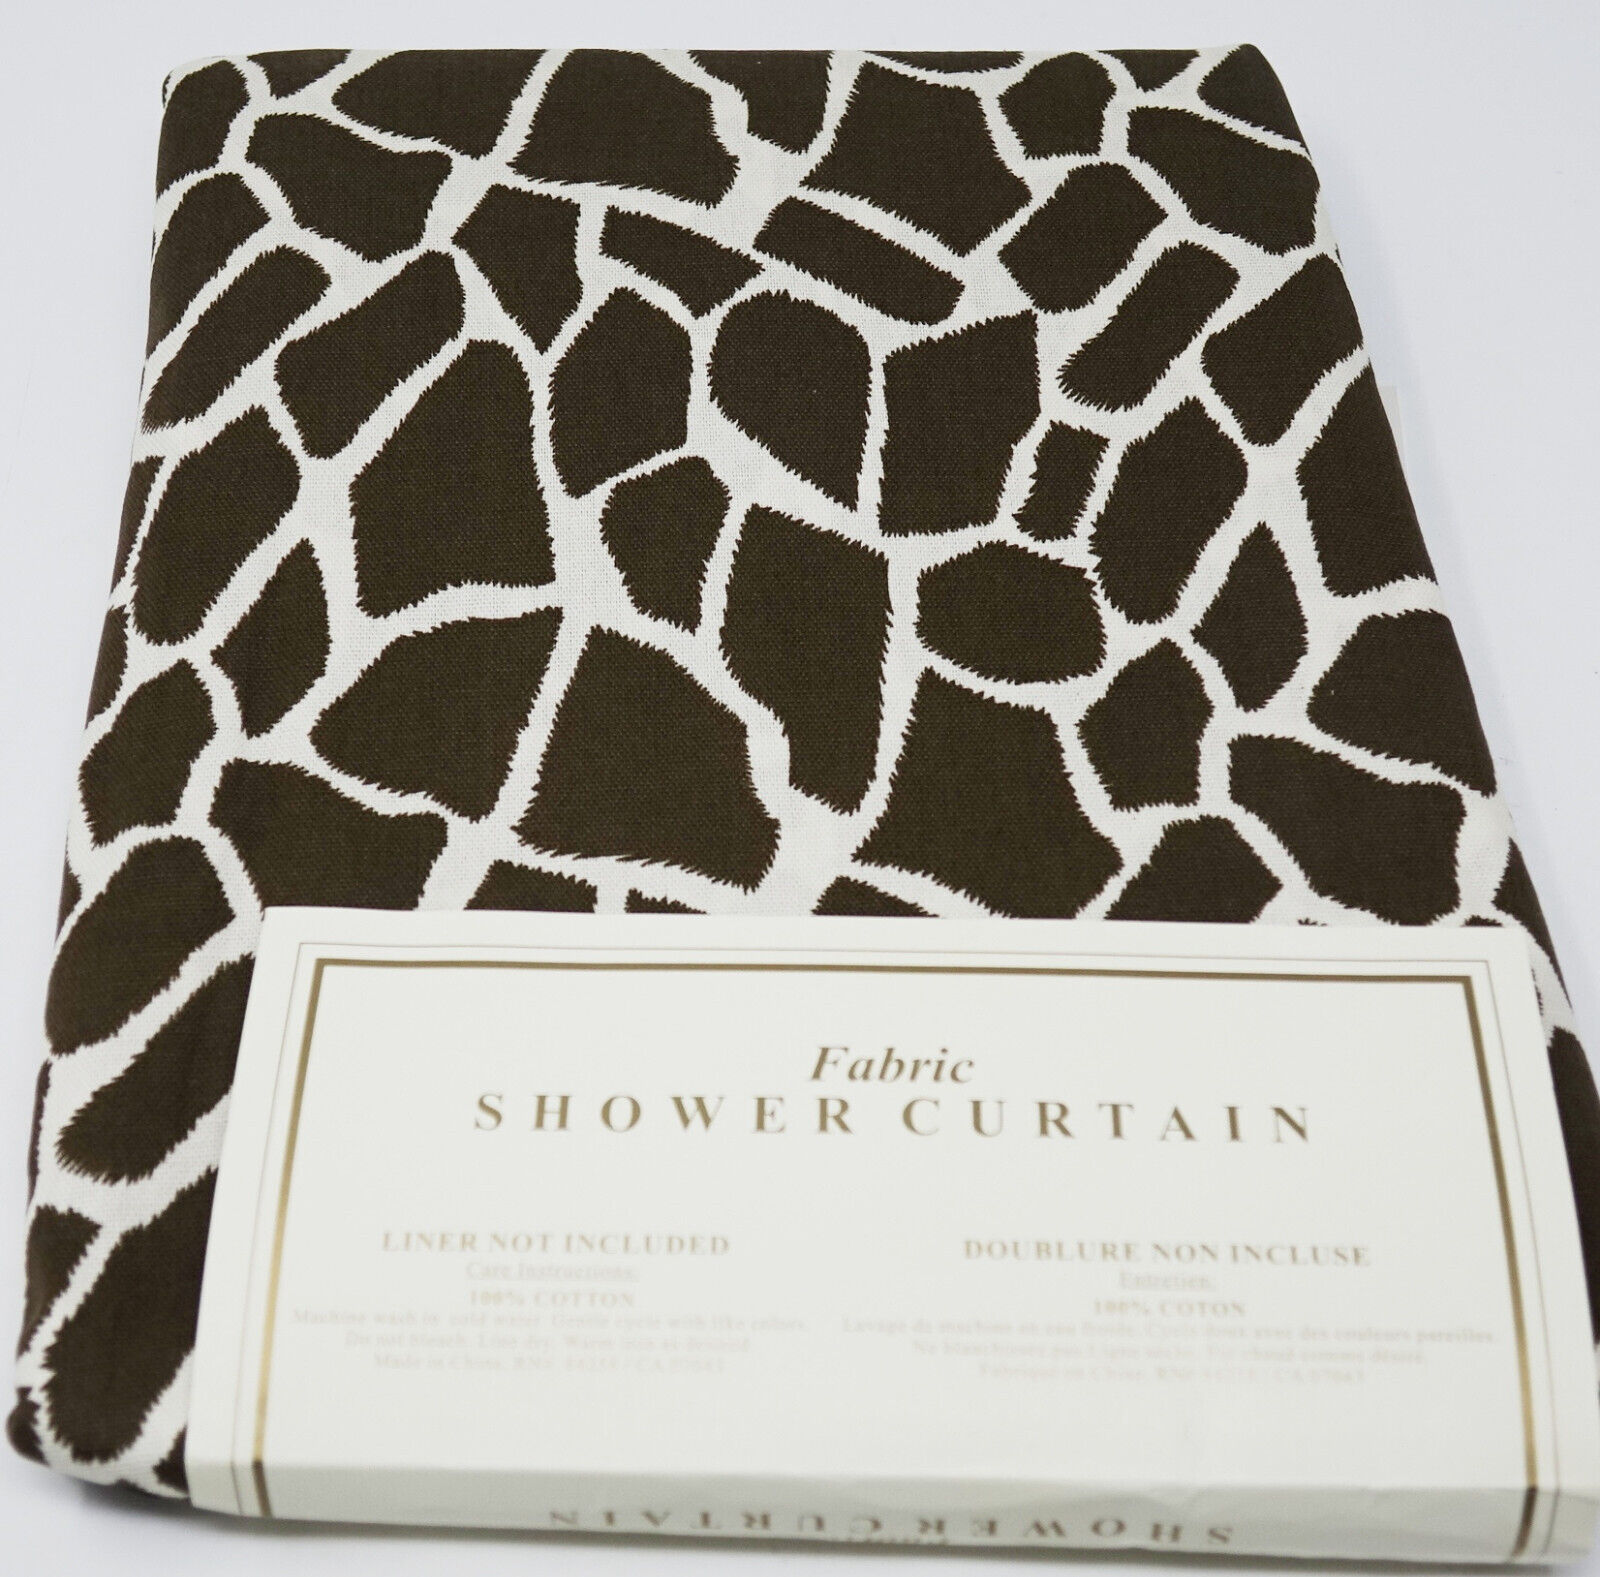 НОВАЯ занавеска для душа из хлопчатобумажной ткани Royal Bath, коричнево-бежевая с принтом жирафа, 72 x 72 дюйма